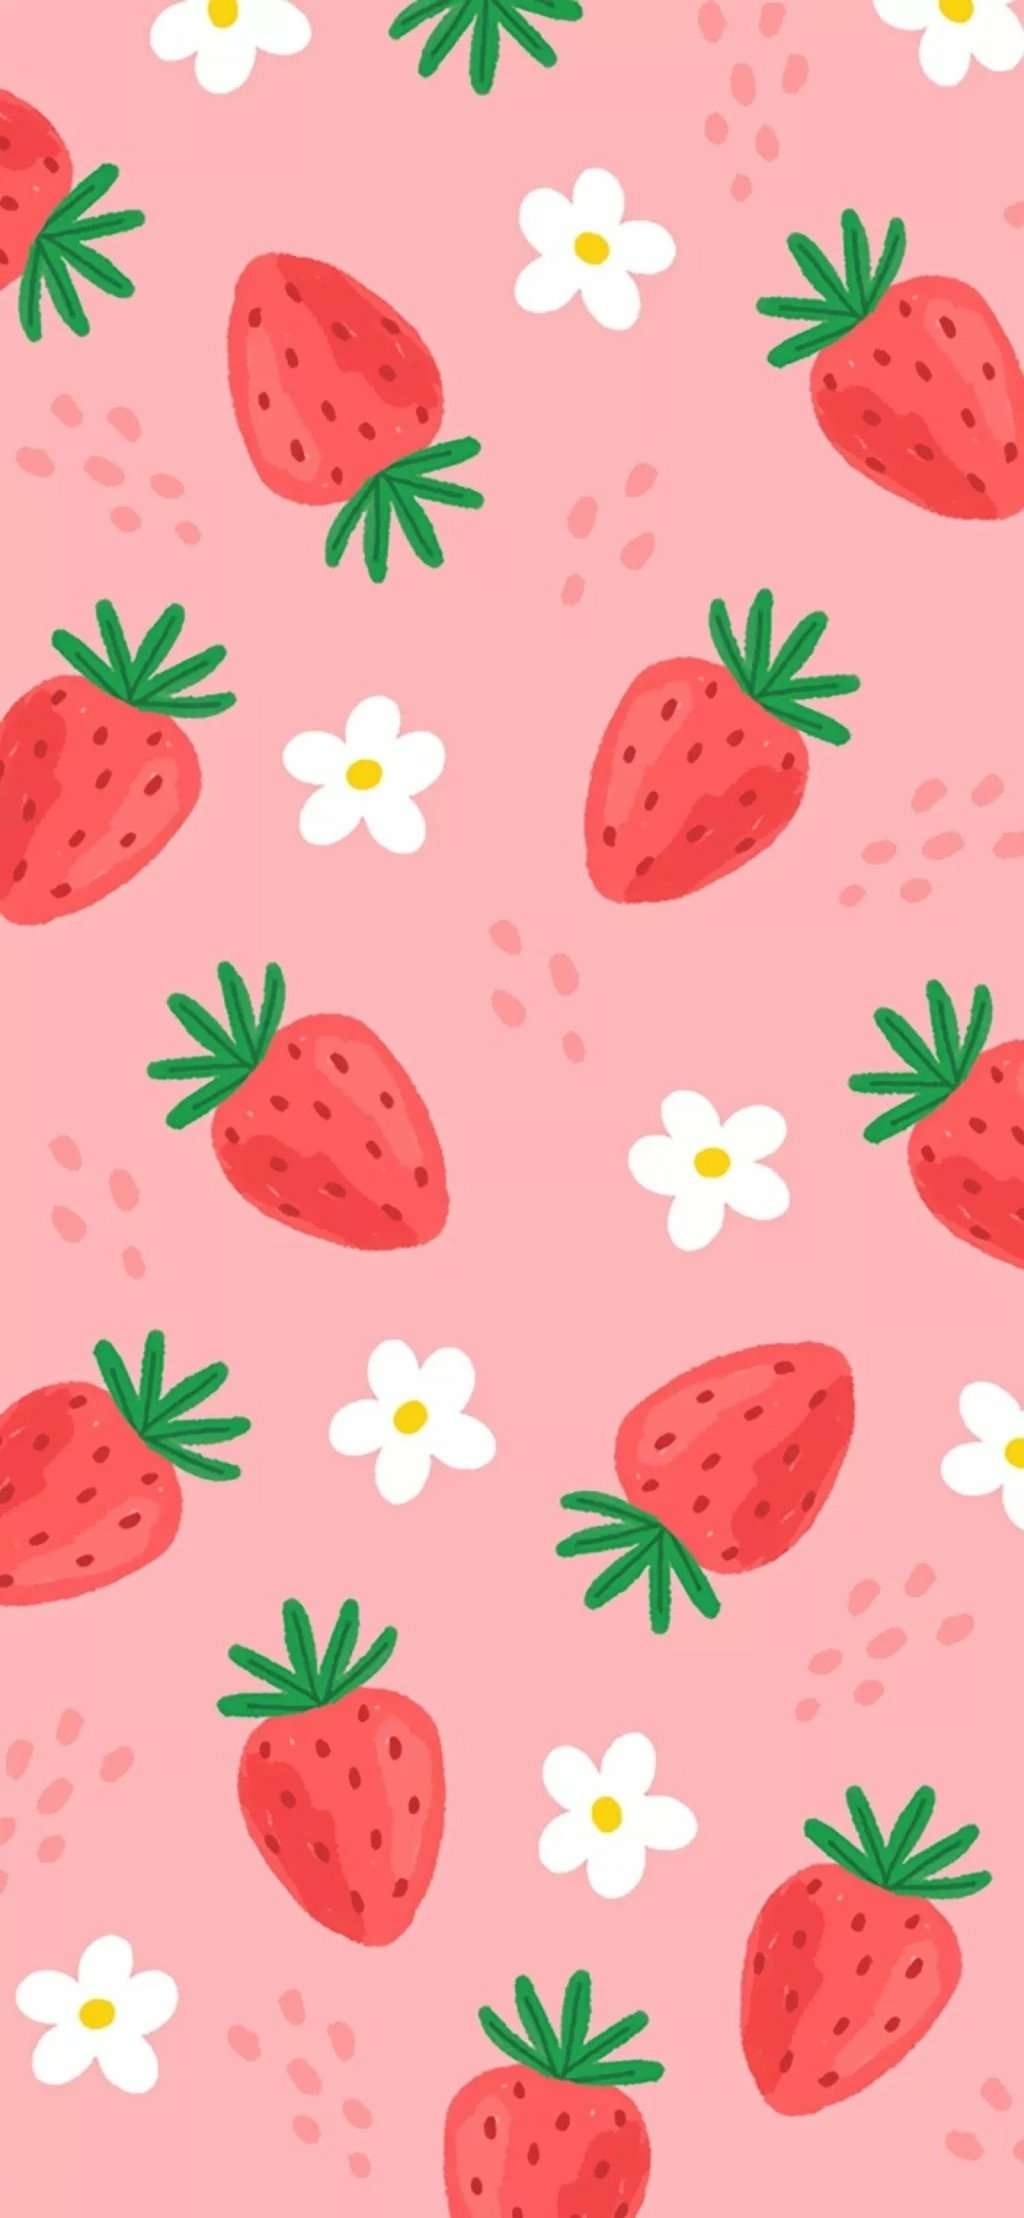 可爱很仙草莓壁纸?